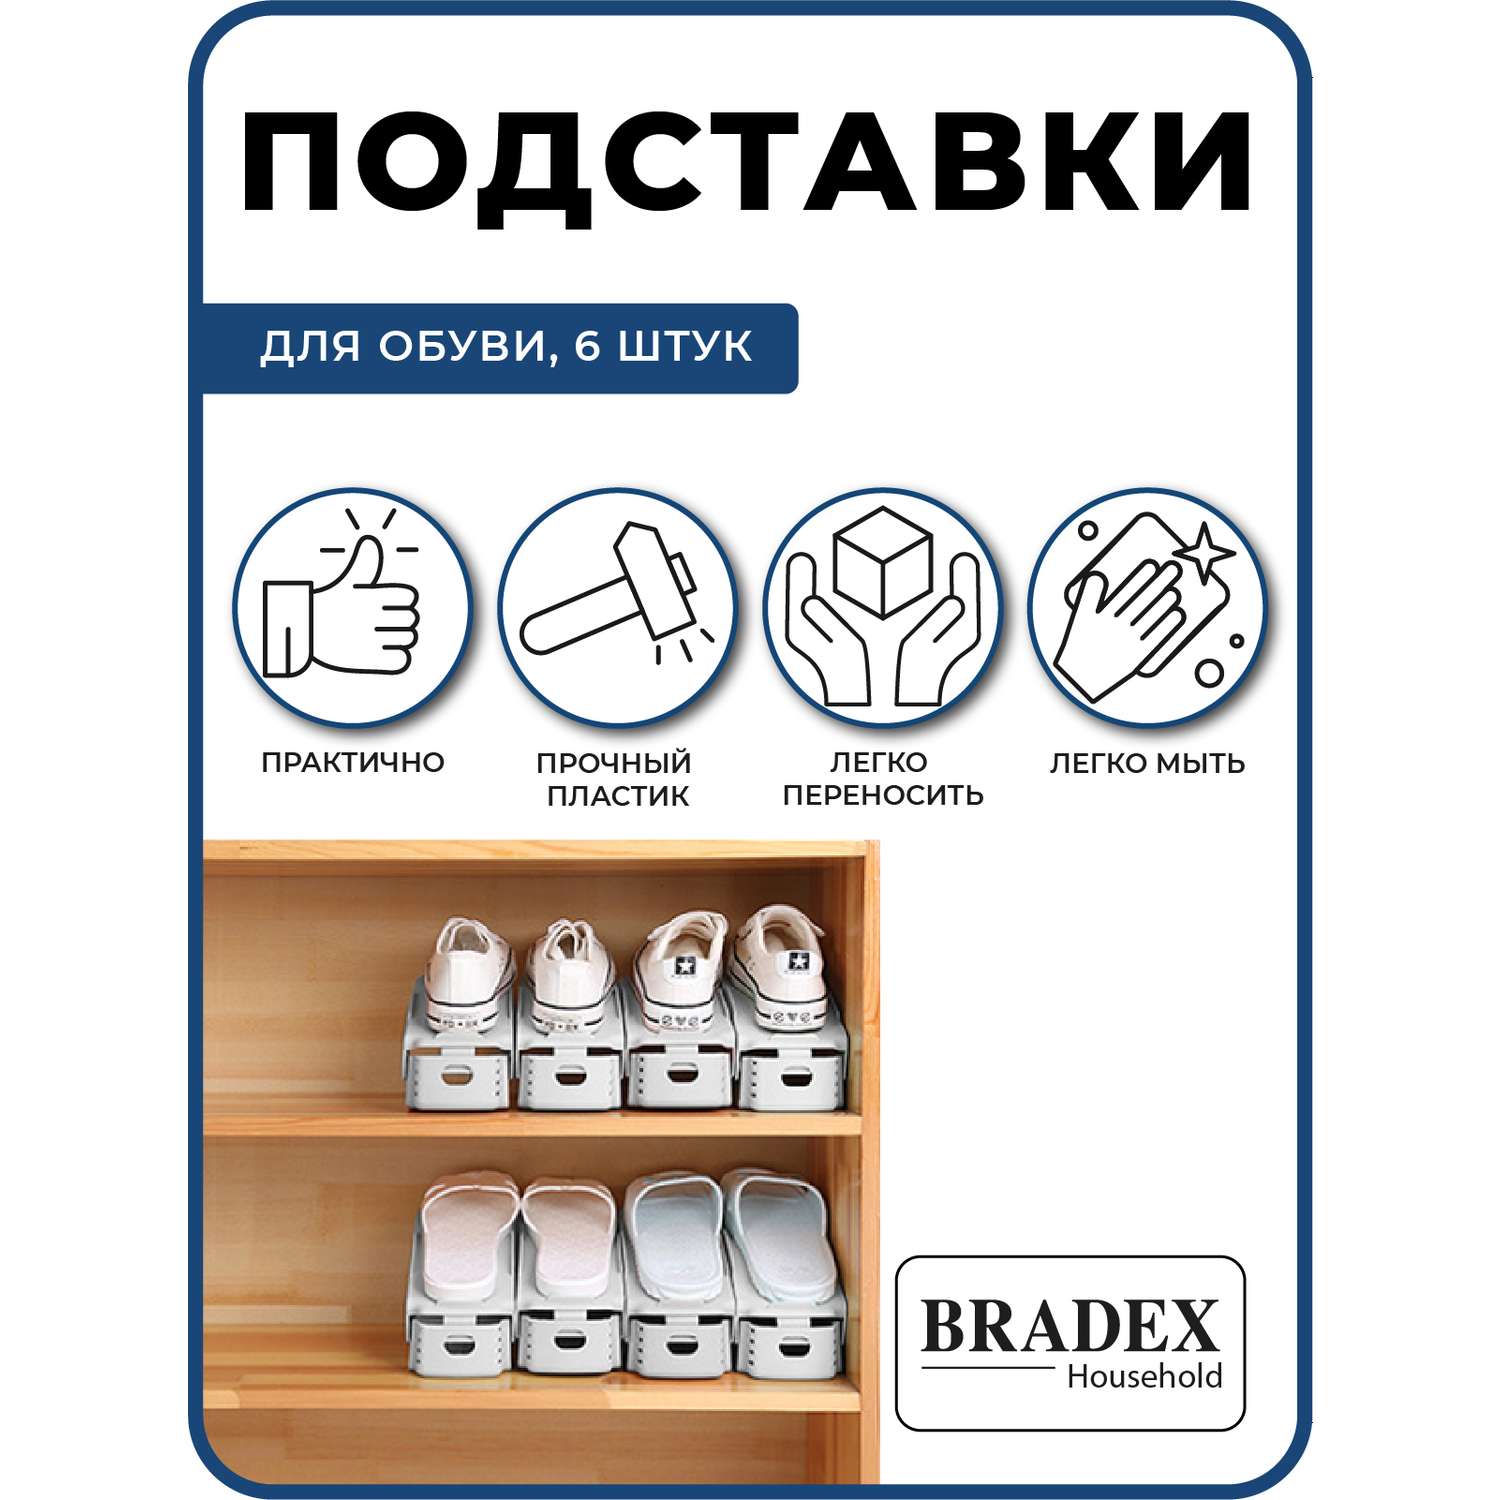 Подставка для обуви модуль Bradex органайзер для хранения 6 шт - фото 4